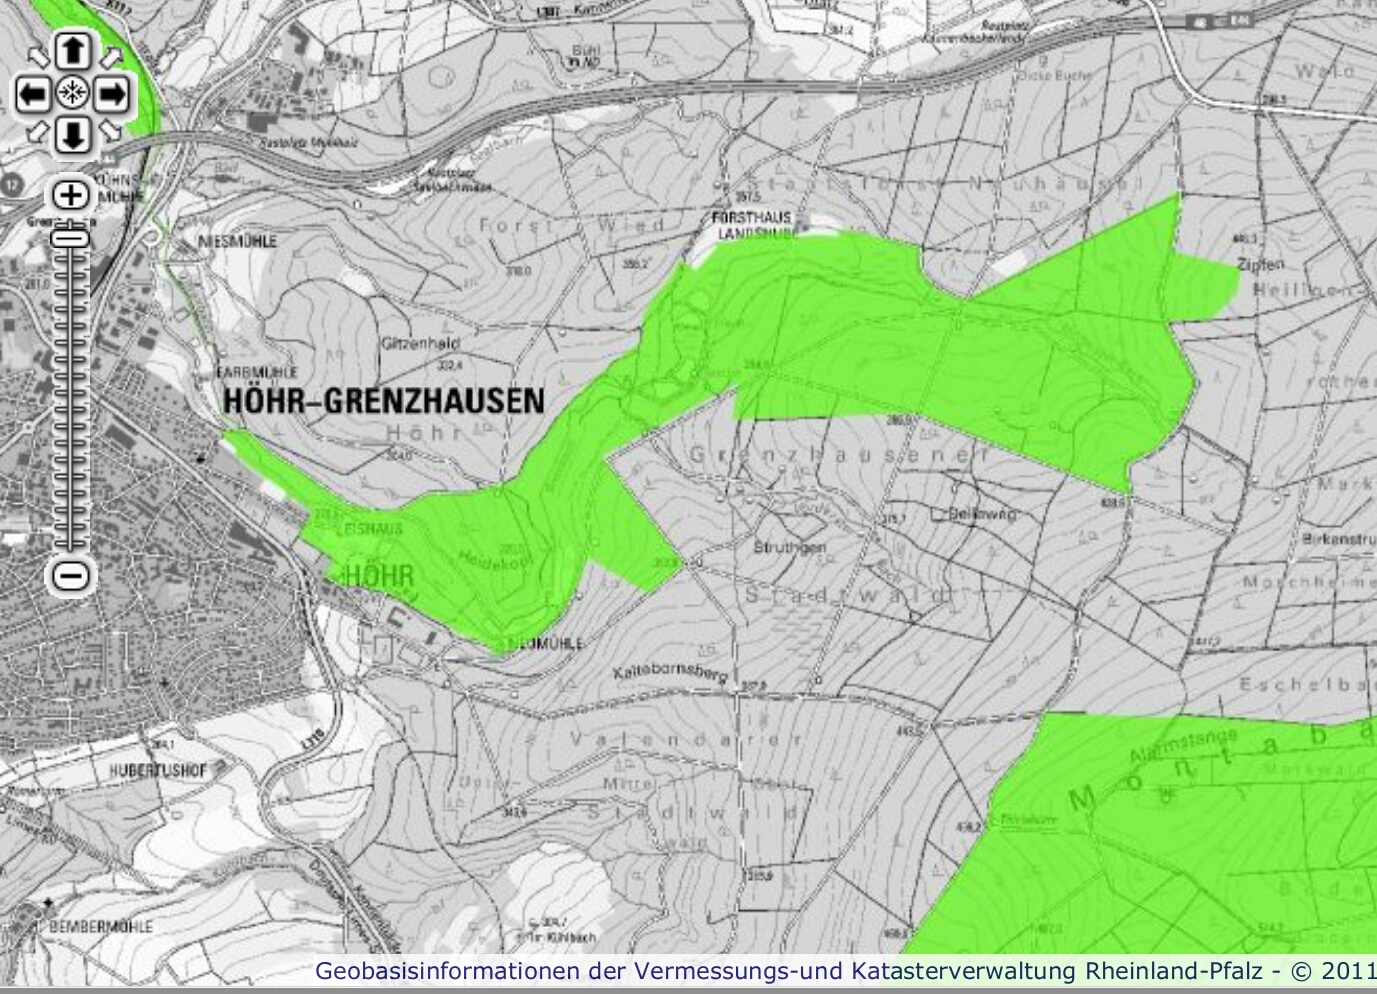 Auszug aus der Karte zum FFH-Gebiet "Saynbachtal - Brexbachtal", Quelle: Geobasisinformation der Vermessungs- und Katasterverwaltung Rheinland-Pfalz